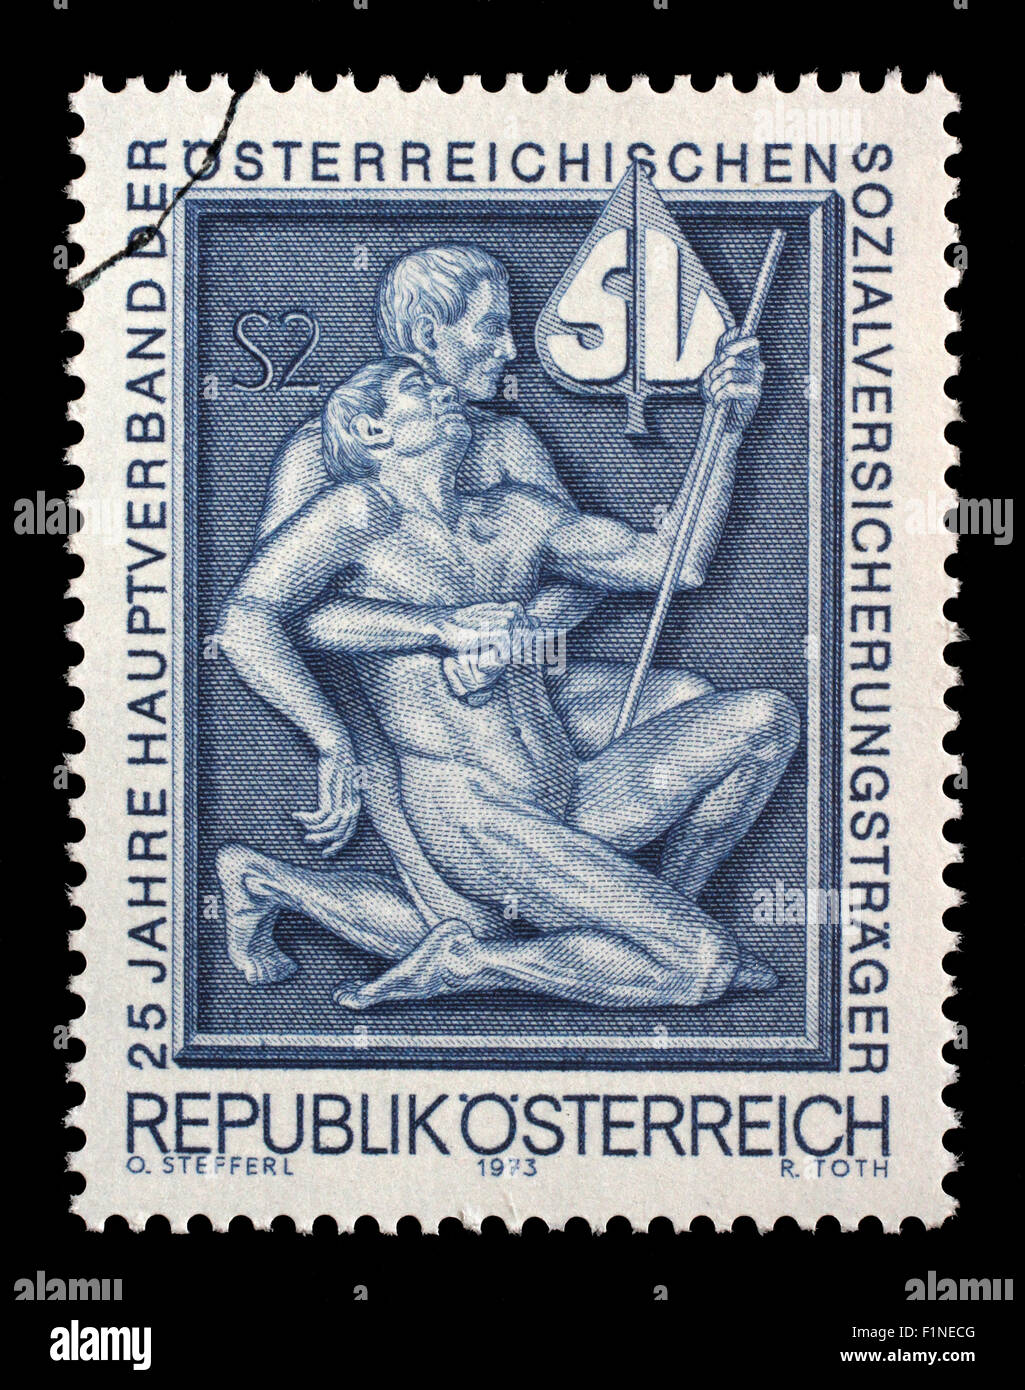 Timbres par l'Autriche, symbolisme montre à l'aide et support, vers 1973 Banque D'Images